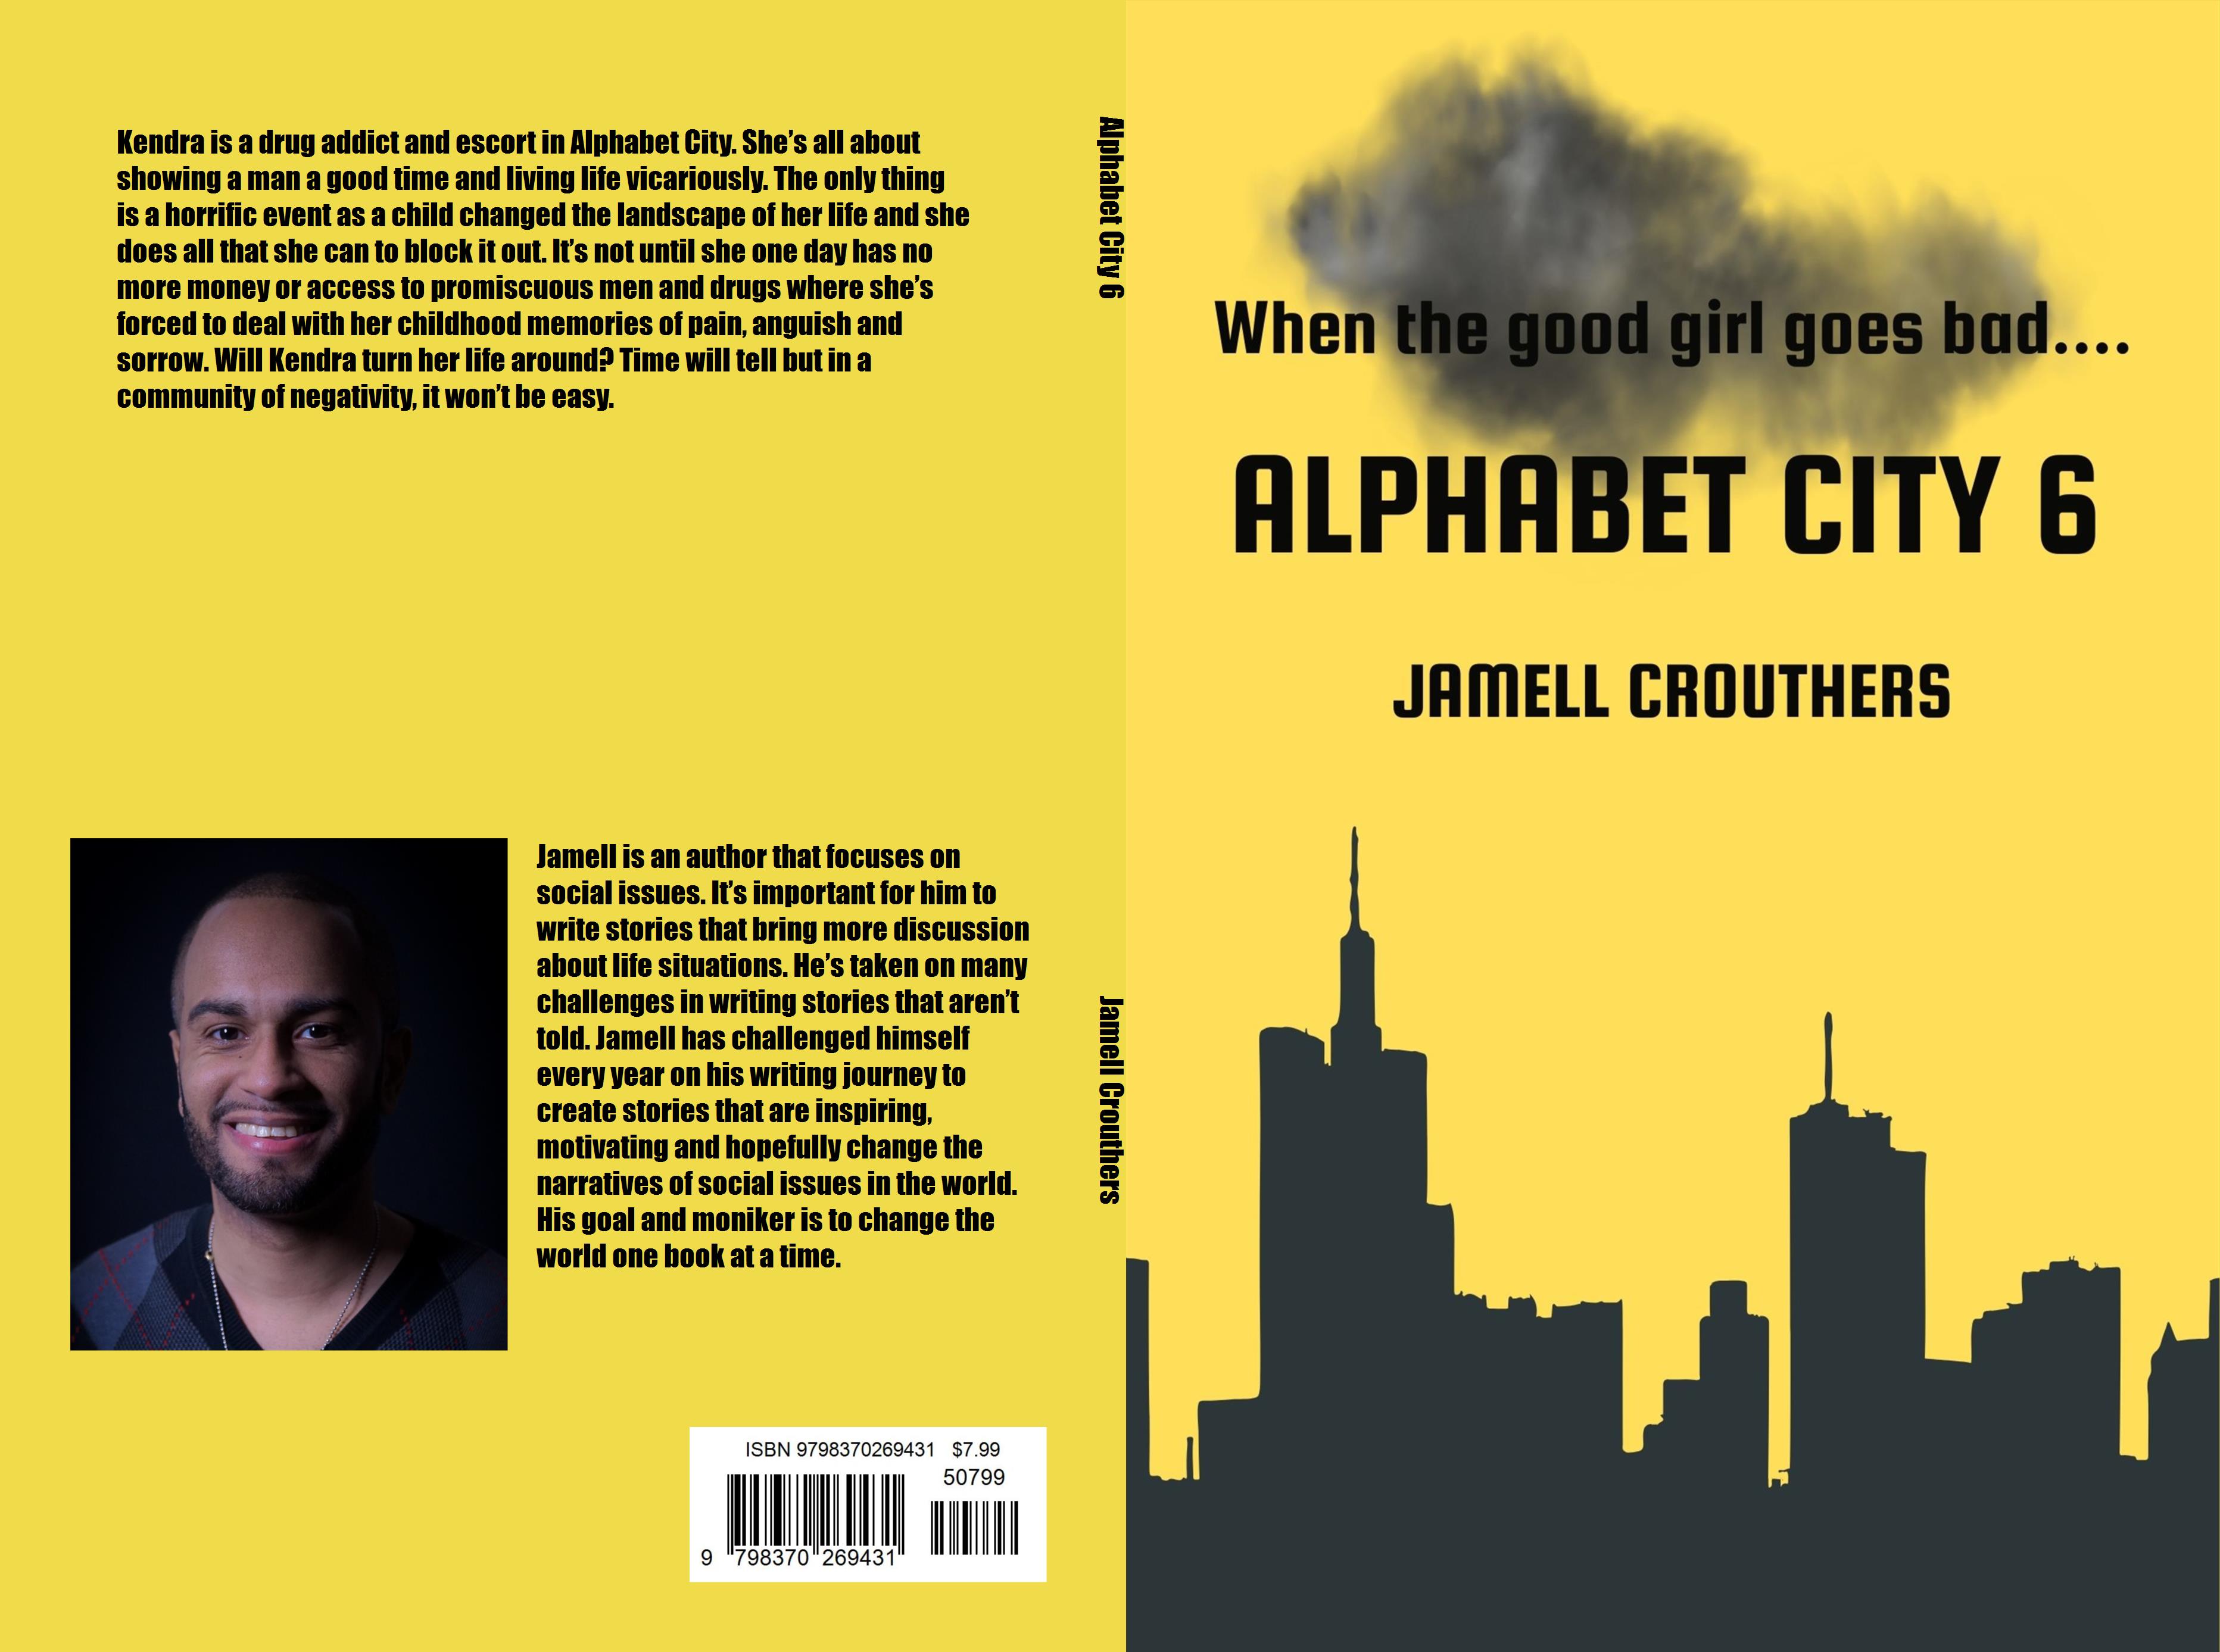 Alphabet City 6 cover image